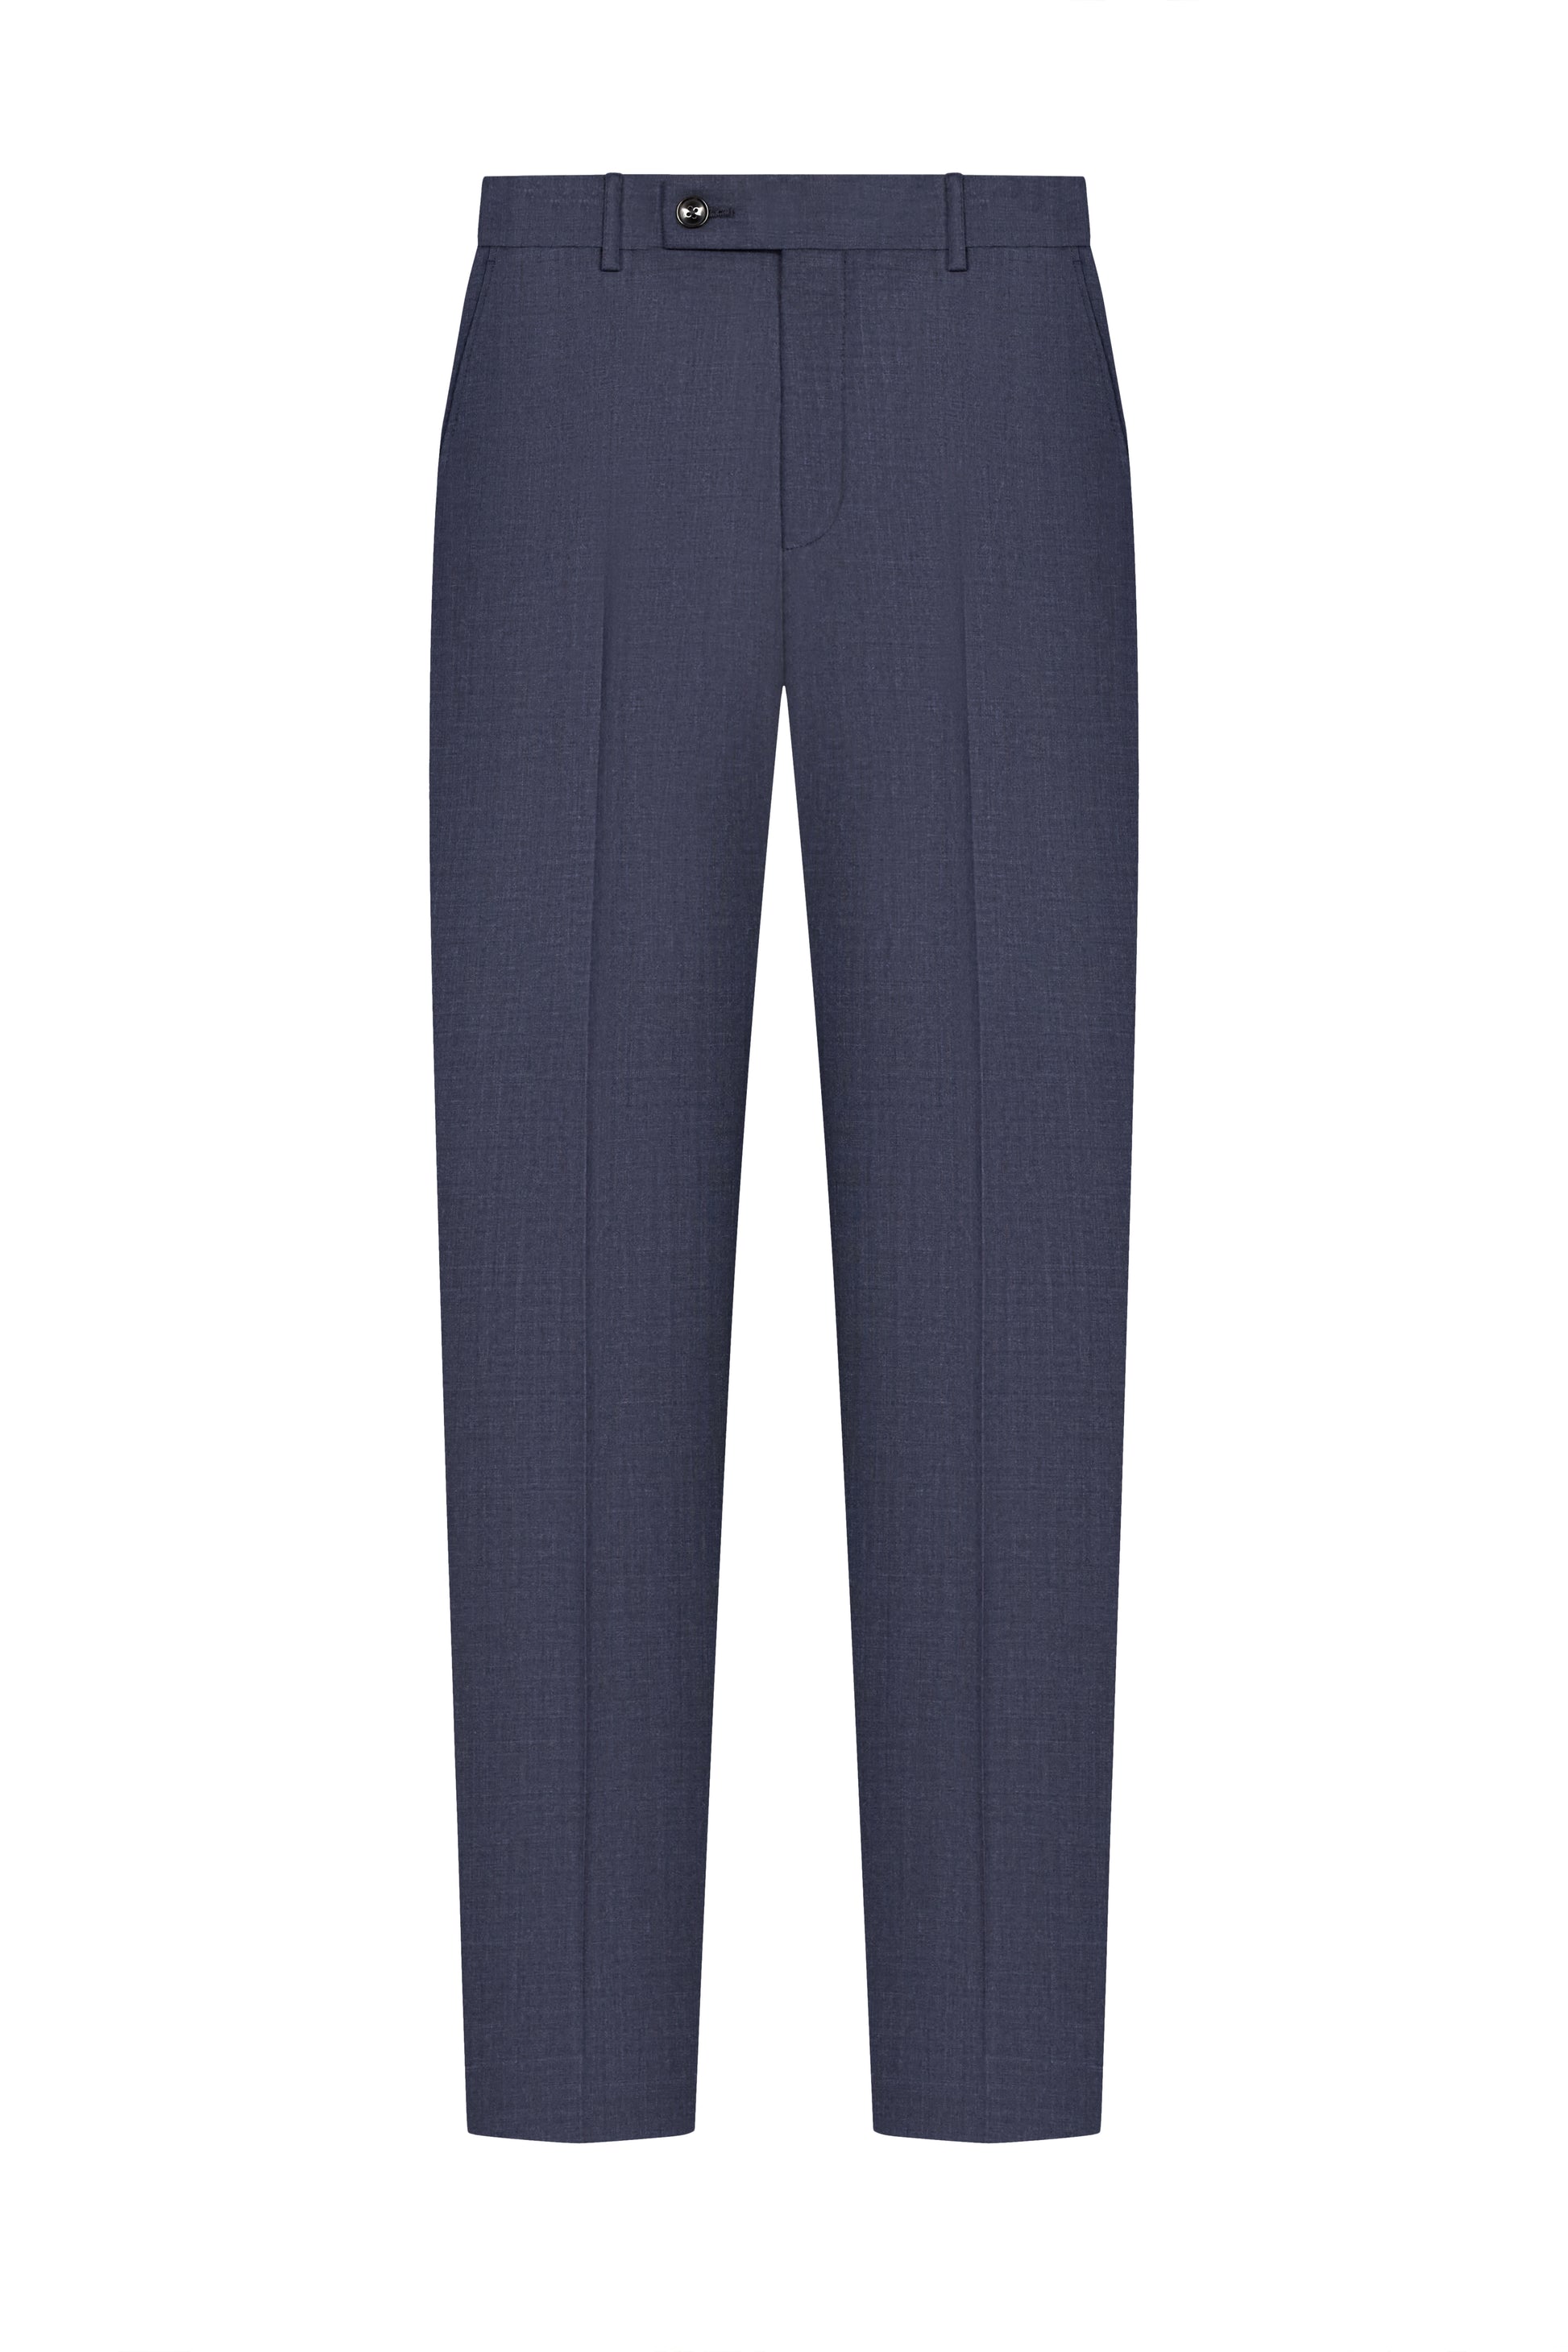 Navy Blue Plain Weave Trouser